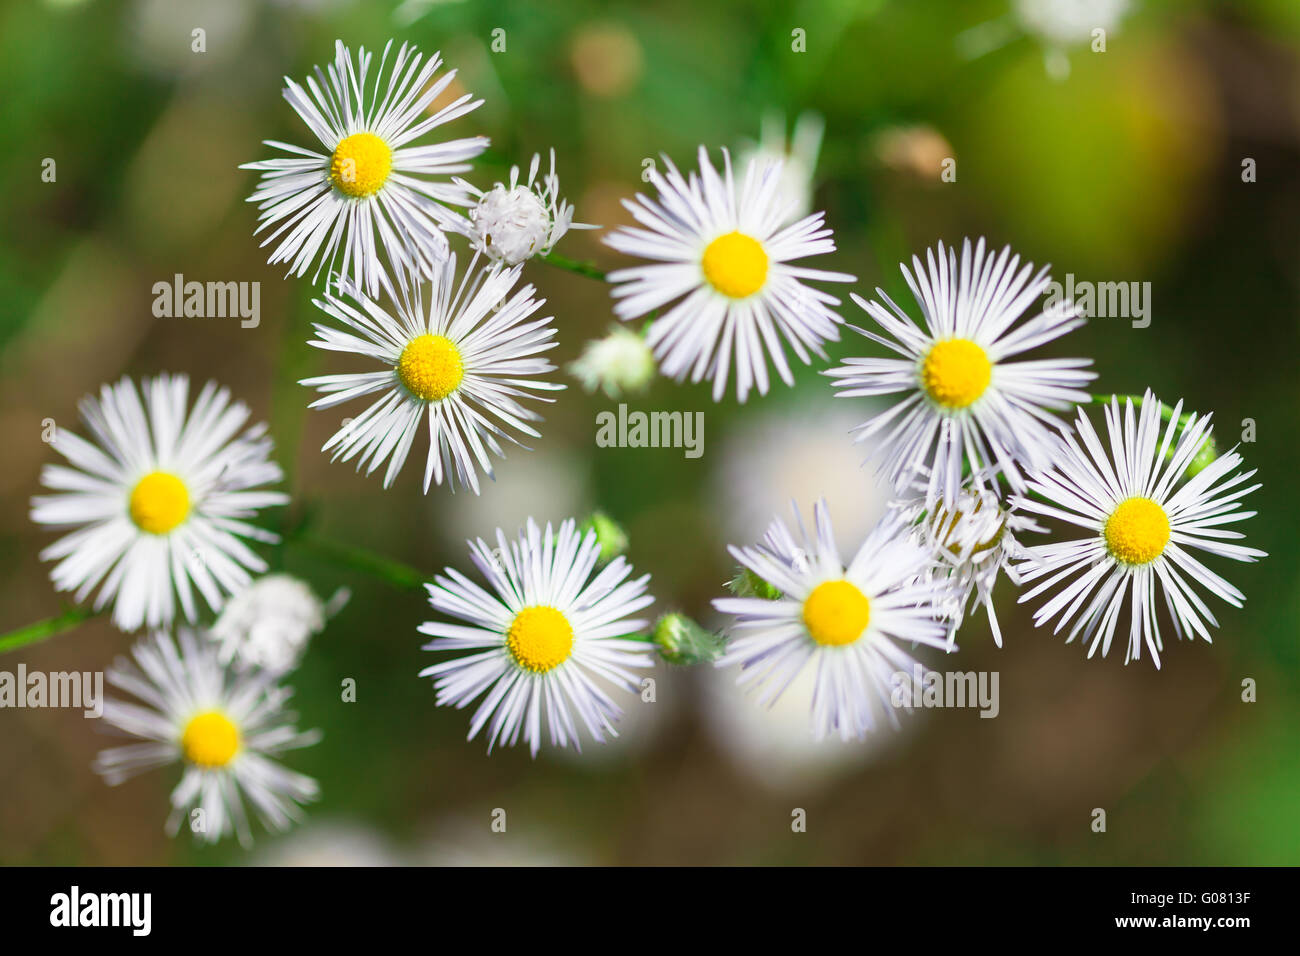 Daisy bianca fiori con petali stretti, del Caucaso Foto Stock